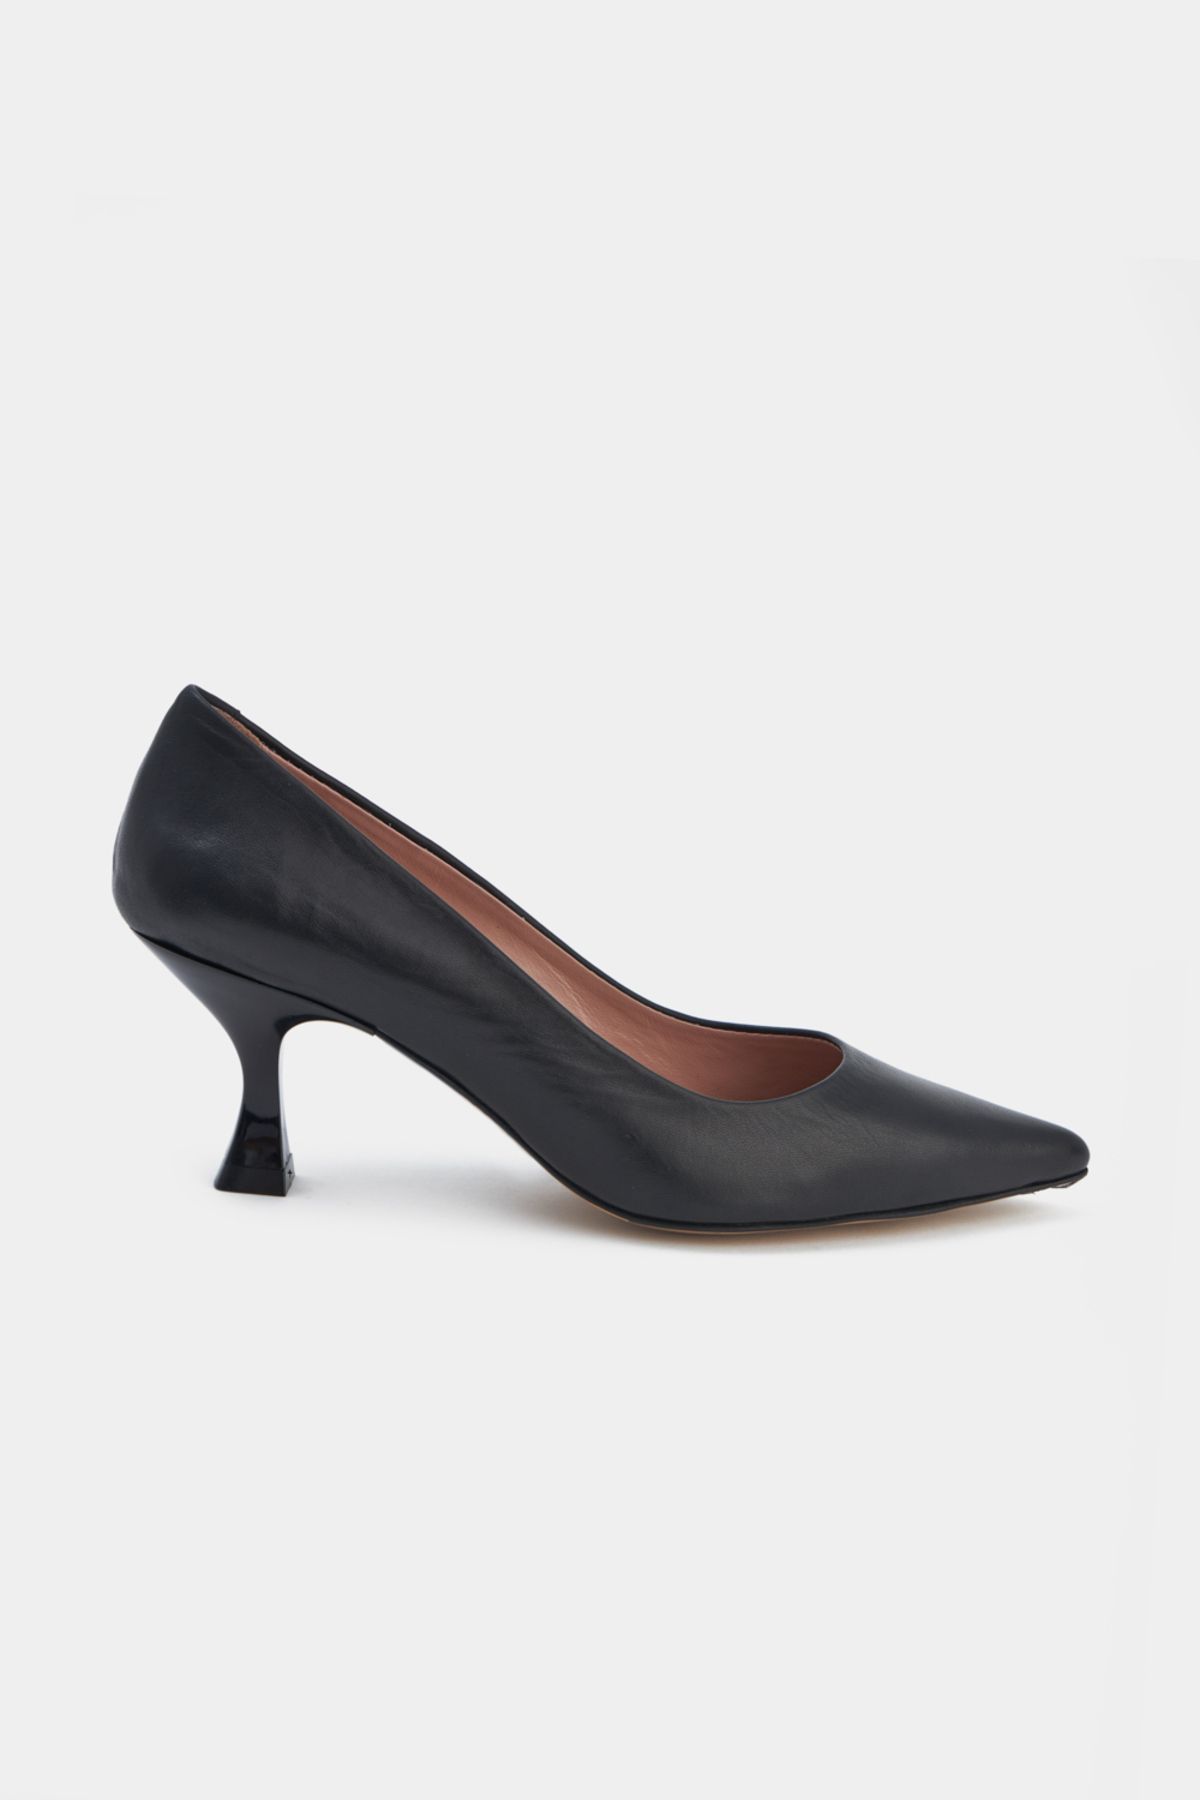 Perspective Siyah Renk Kısa Topuklu Kadın Ayakkabı